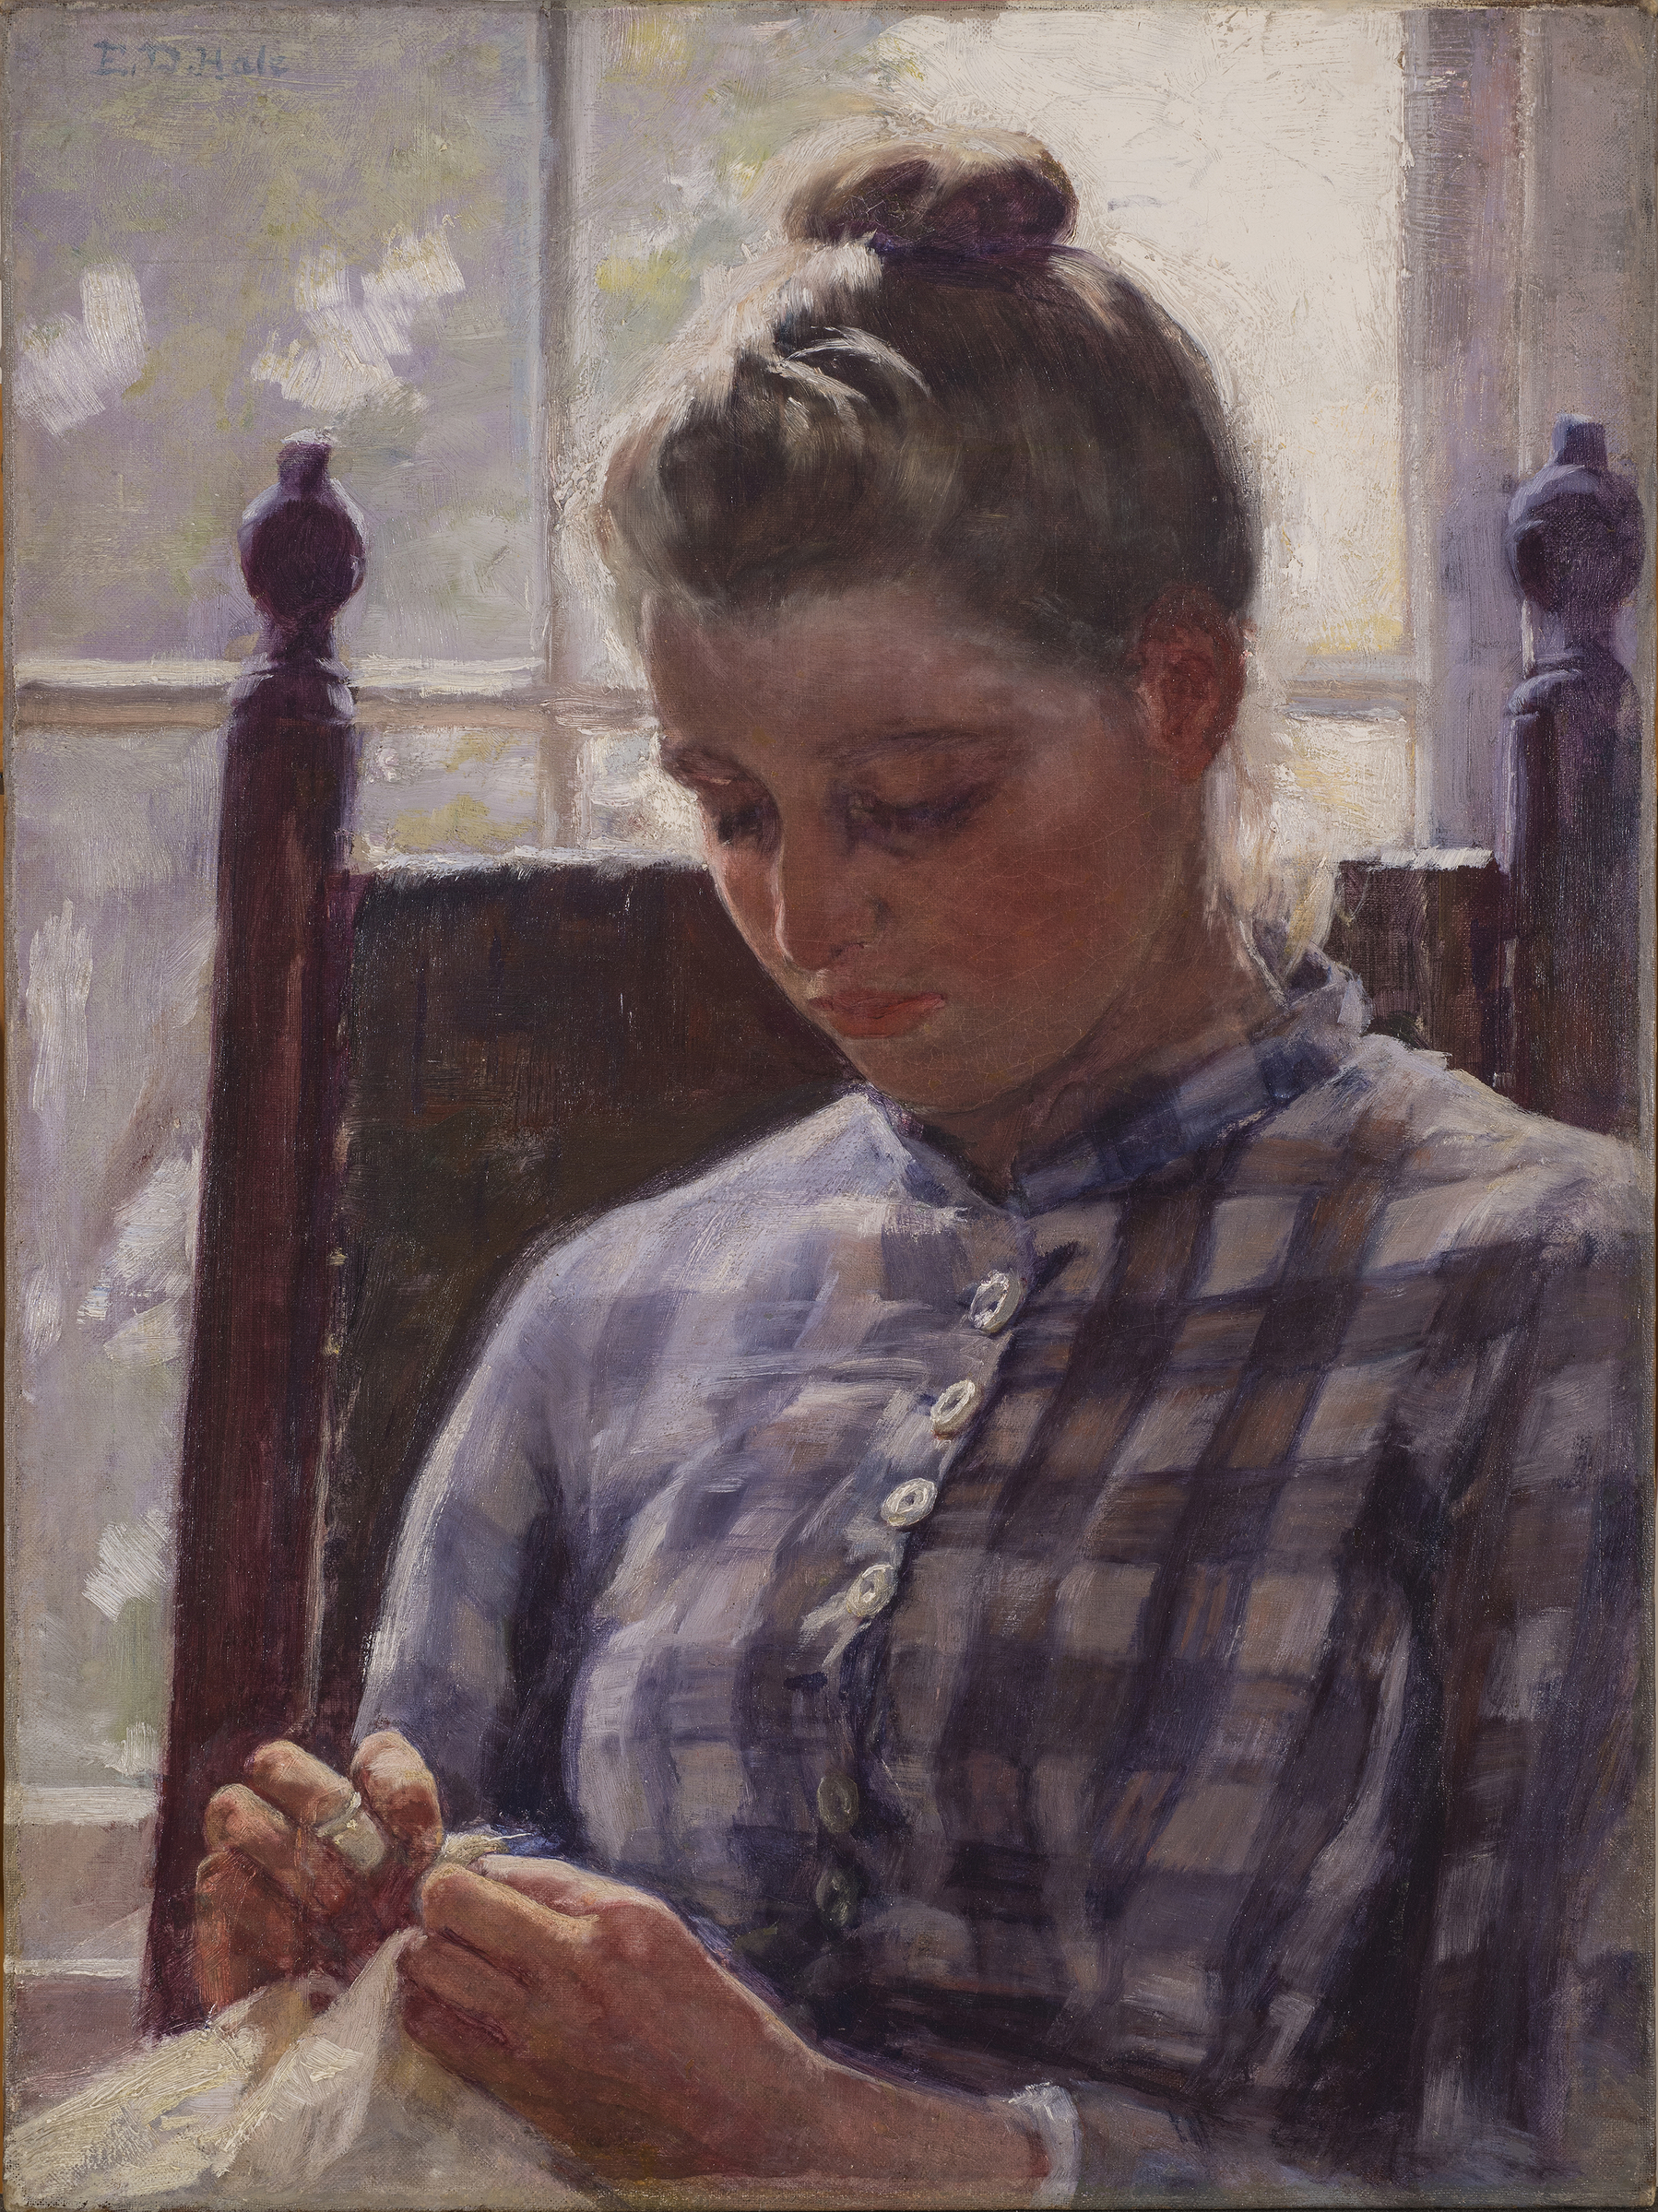 June by Ellen Day Hale - ca. 1893 - 60 x 46 cm Museo Nacional de Mujeres Artistas